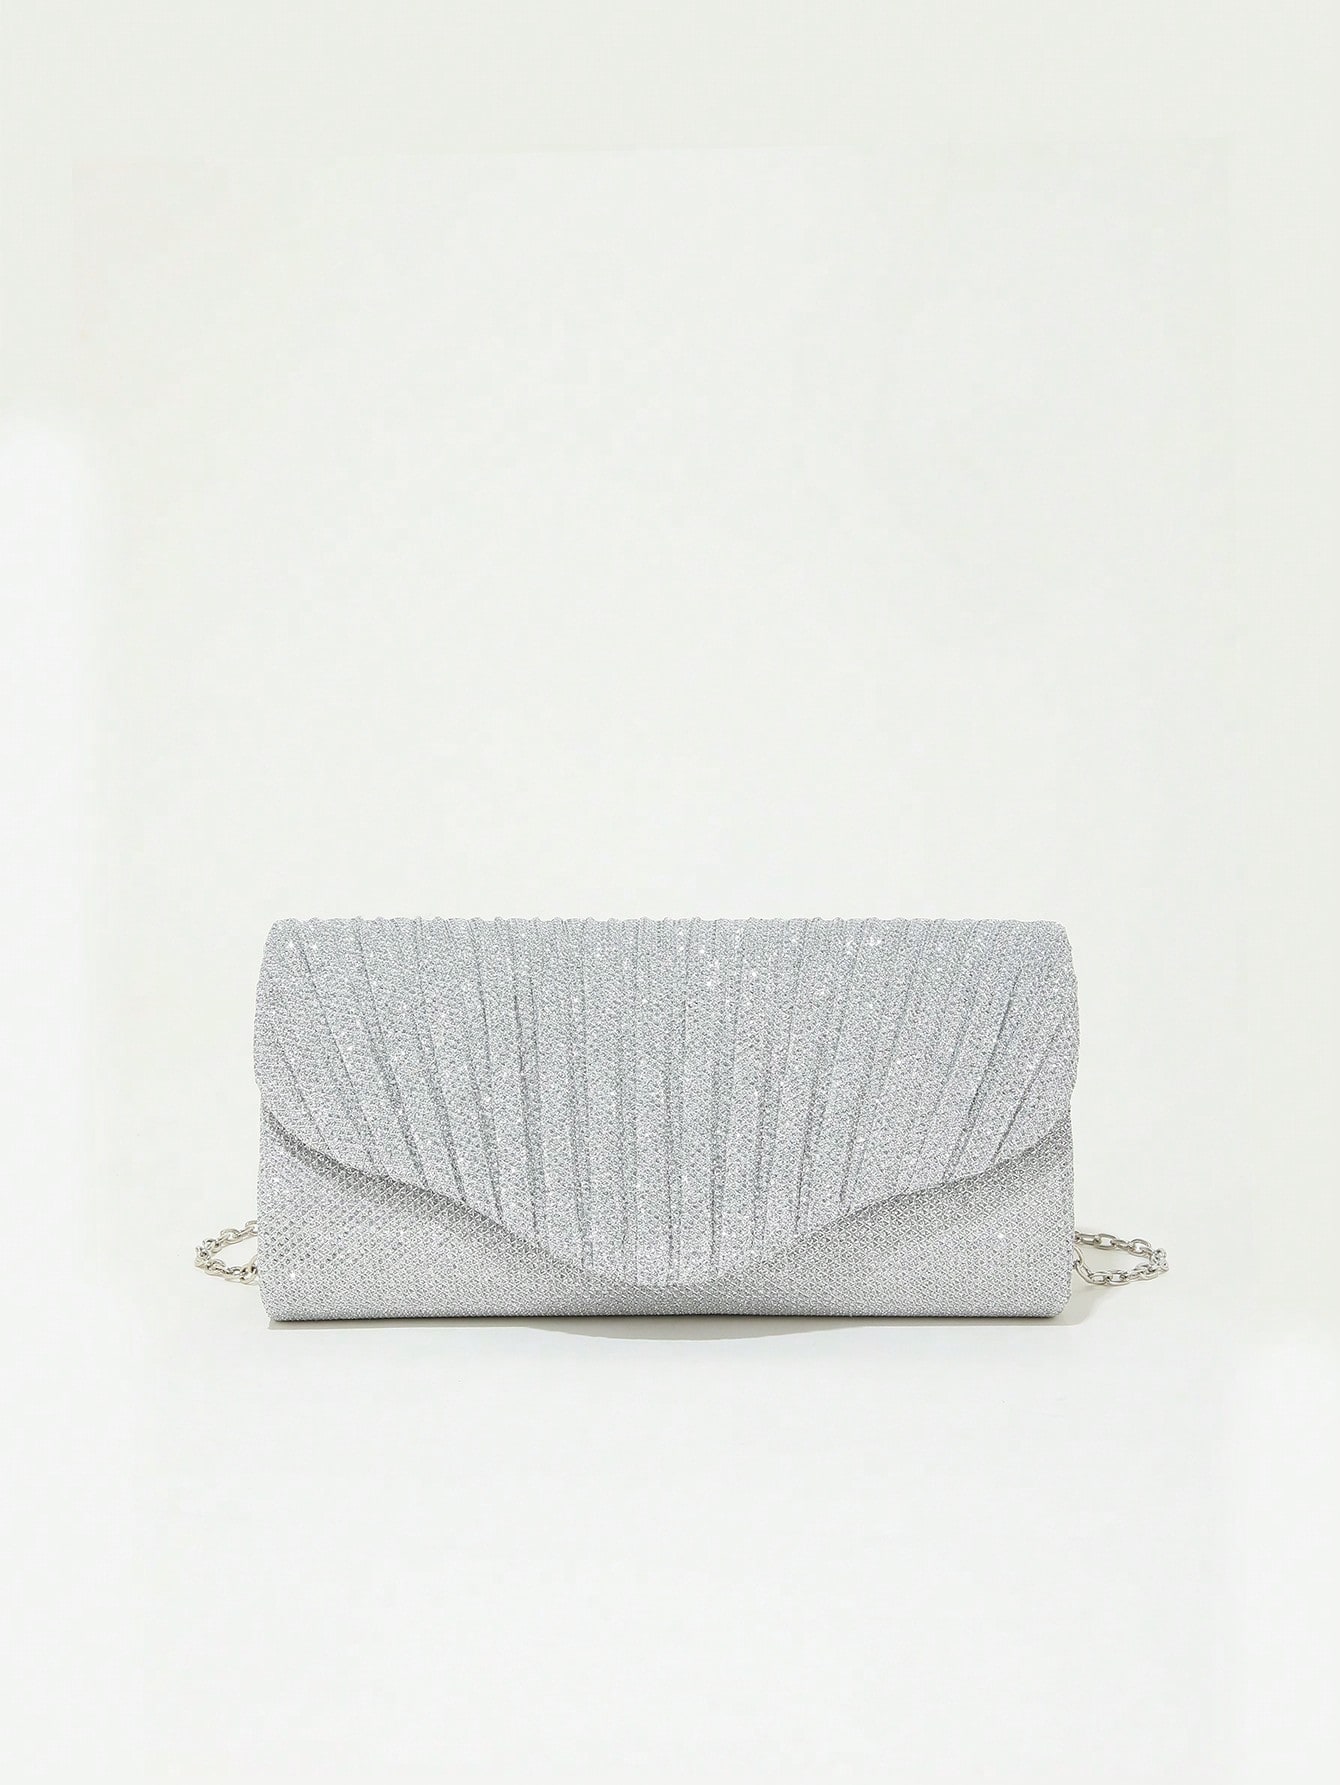 Мини-сумка-конверт с гламурной плиссированной деталью и цепочкой с блестками, серебро фотографии